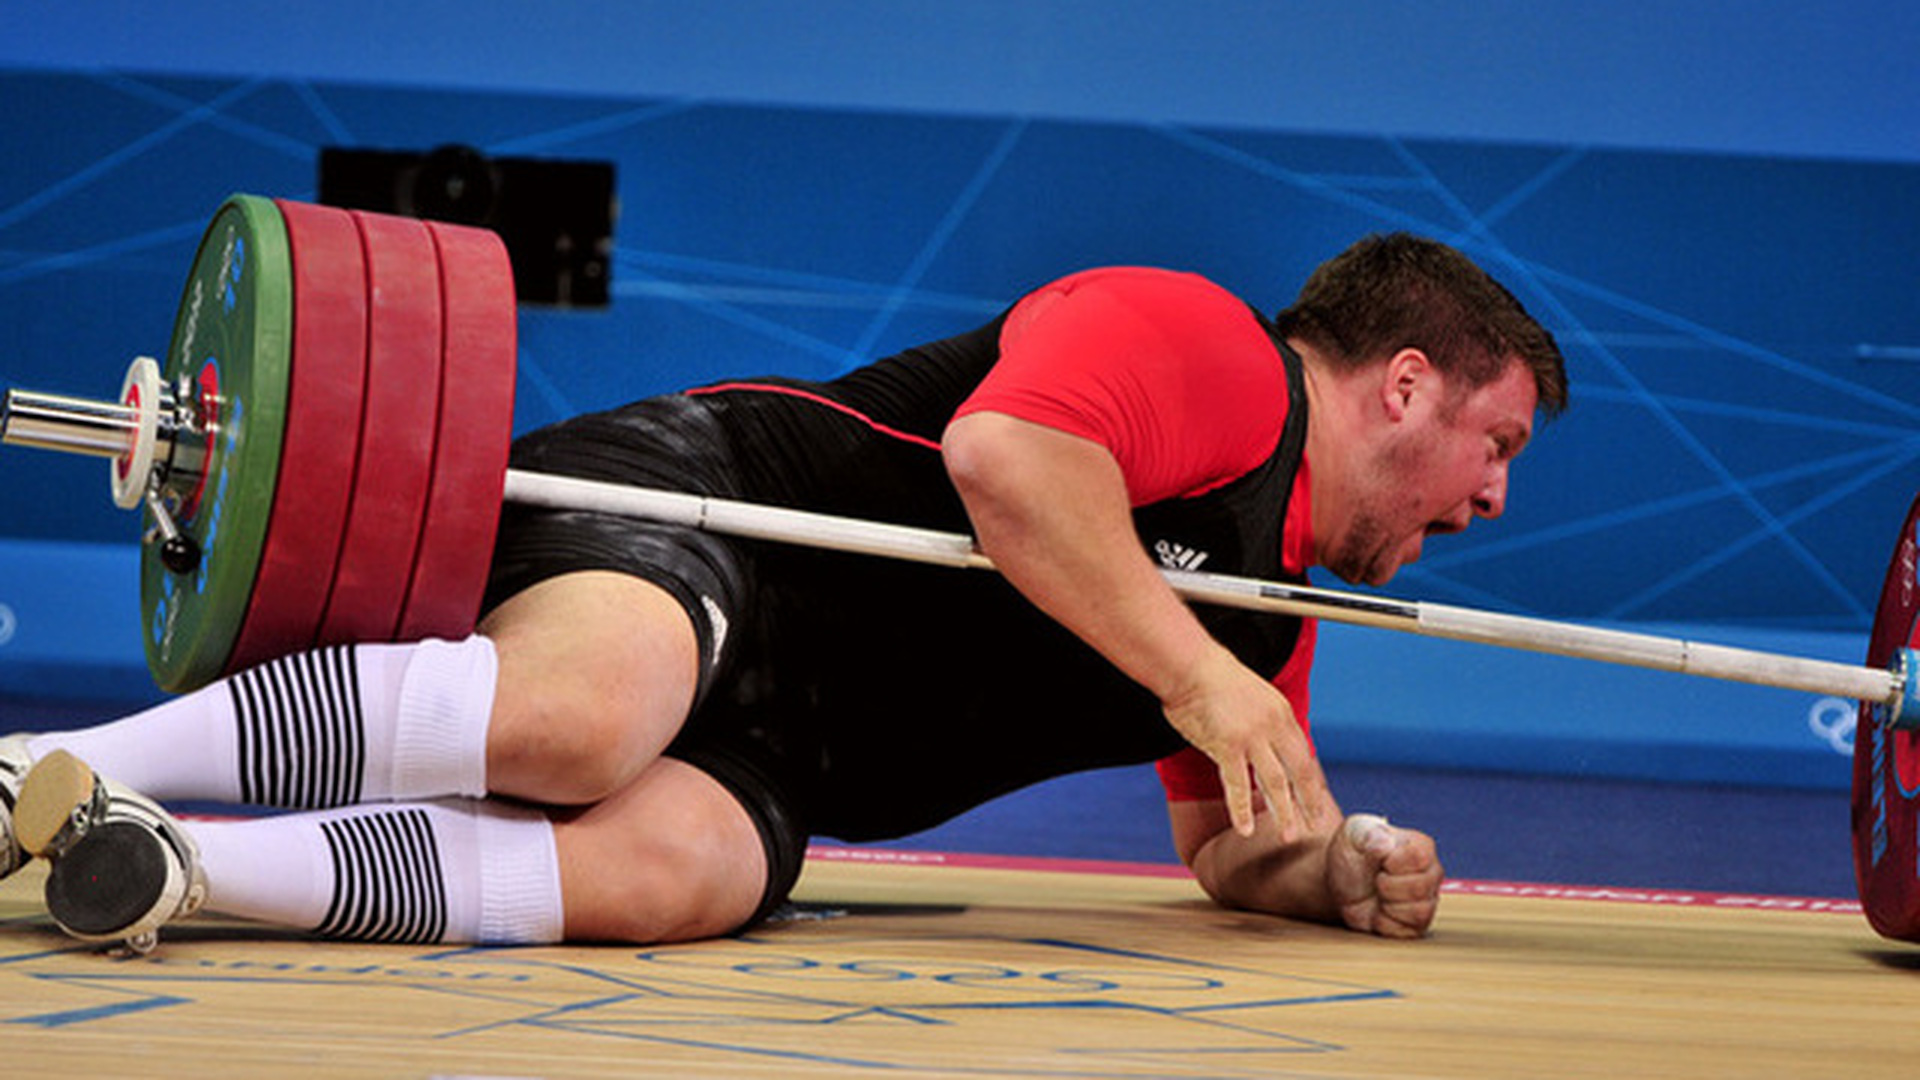 Спортсмены на соревнованиях по тяжелой атлетике. Маттиас Штайнер штангист 2012. Тяжелая атлетика штанга. Травмы штангистов. Тяжелая атлетика травмы.